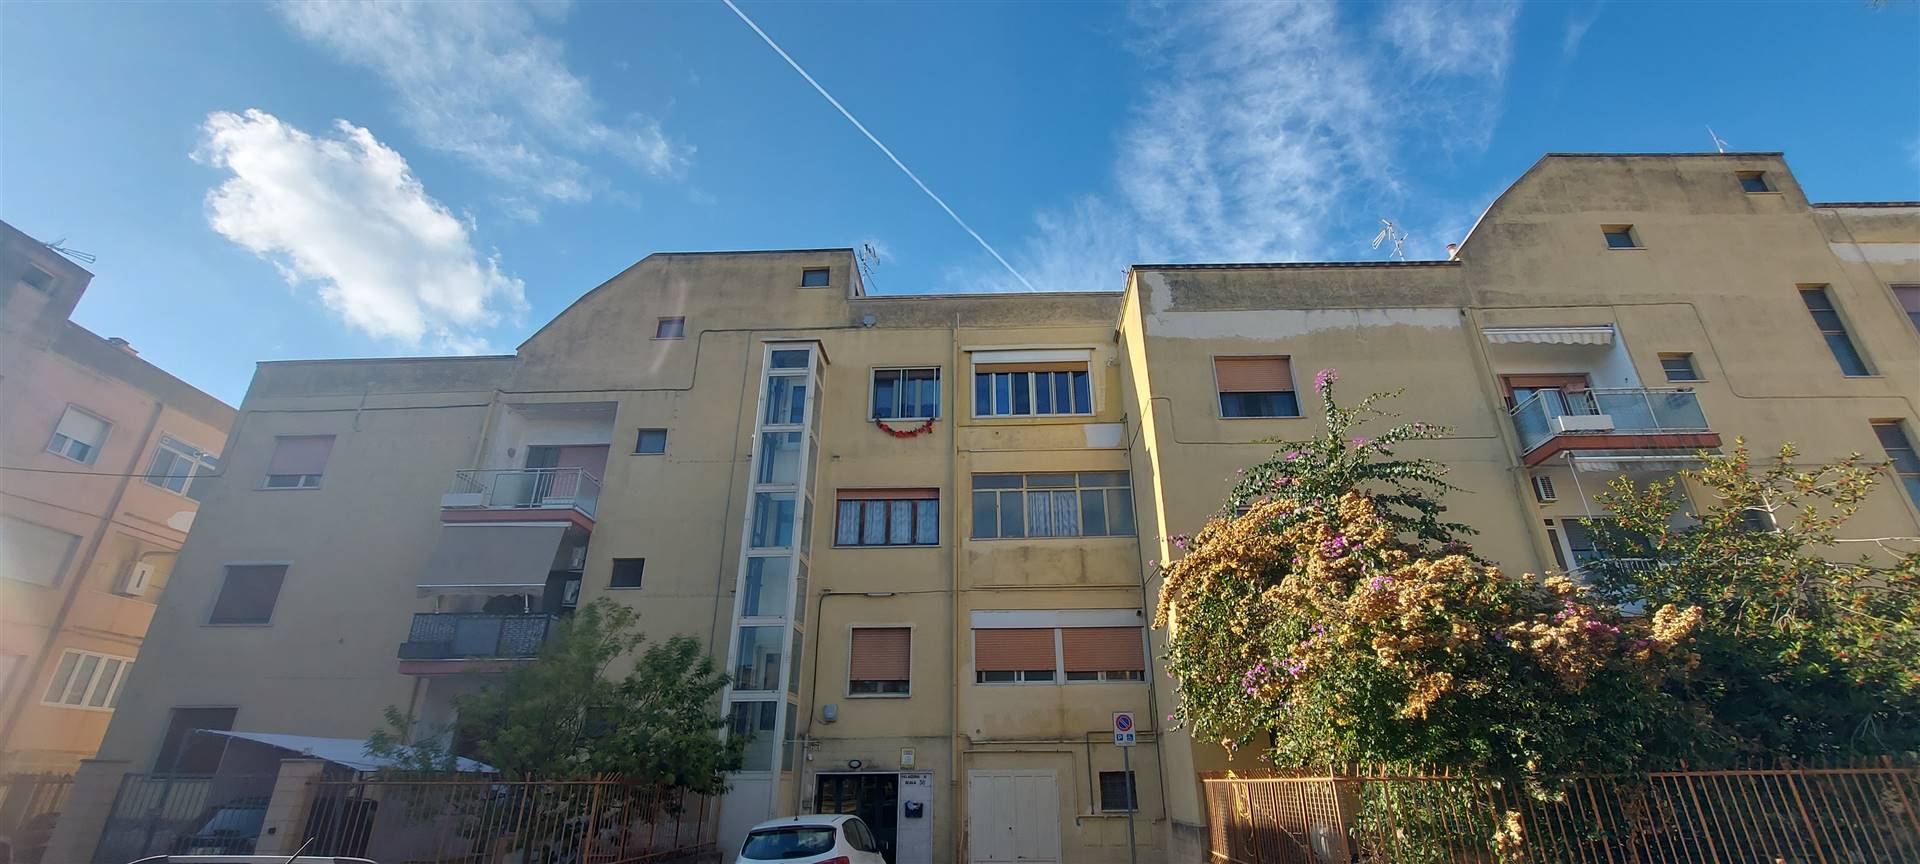 Appartamento in vendita a Mesagne, 7 locali, zona Località: SANT'ANTONIO, prezzo € 65.000 | PortaleAgenzieImmobiliari.it